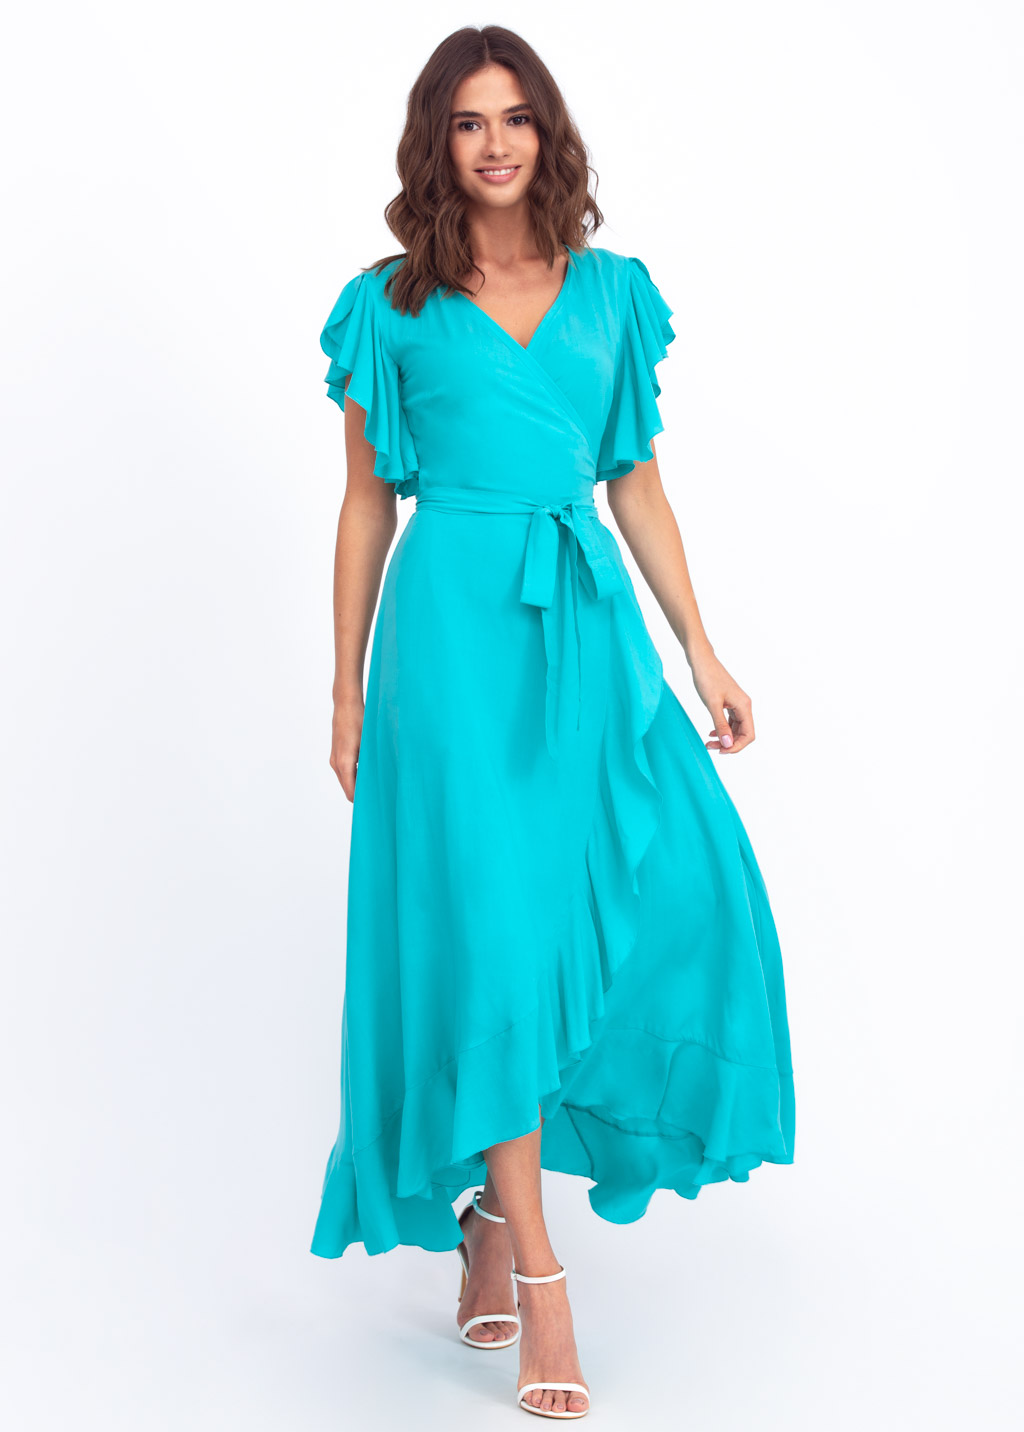 Turquoise romantic wrap around dress